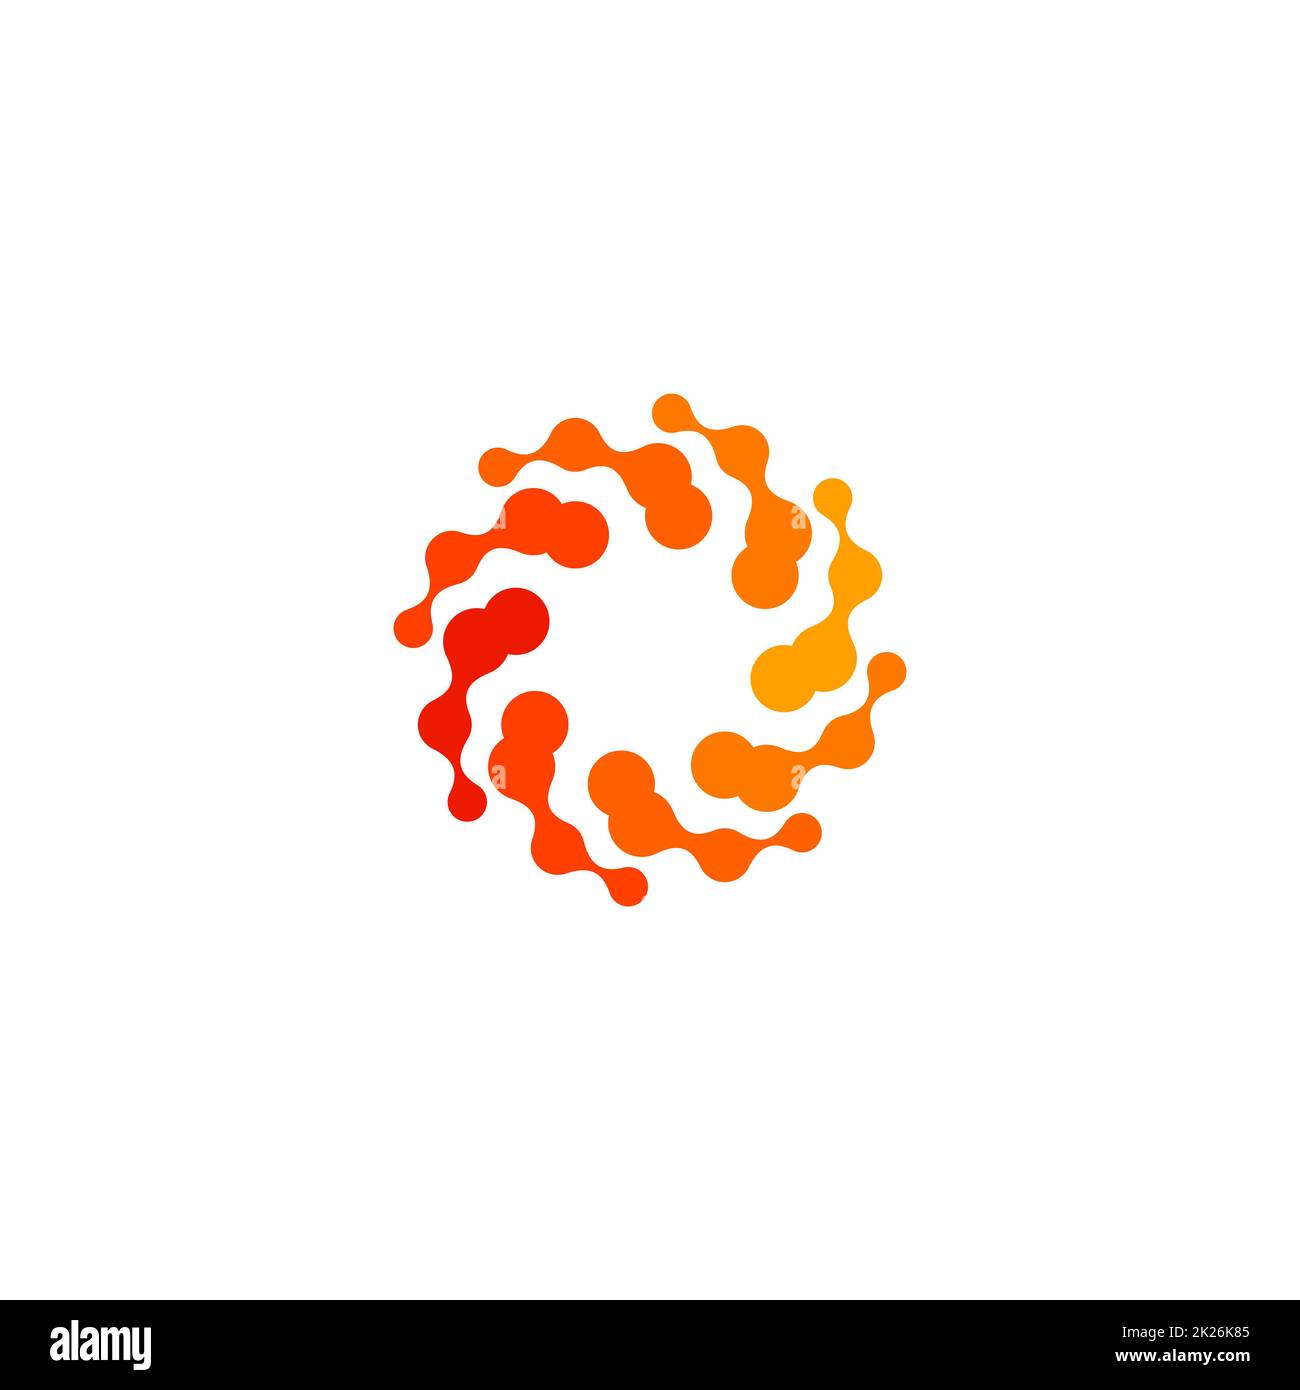 Isoliertes, abstraktes, rundes, orangefarbenes Logo, stilisiertes Sonnenlogo auf weißem Hintergrund, wirbelförmige Vektordarstellung Stockfoto